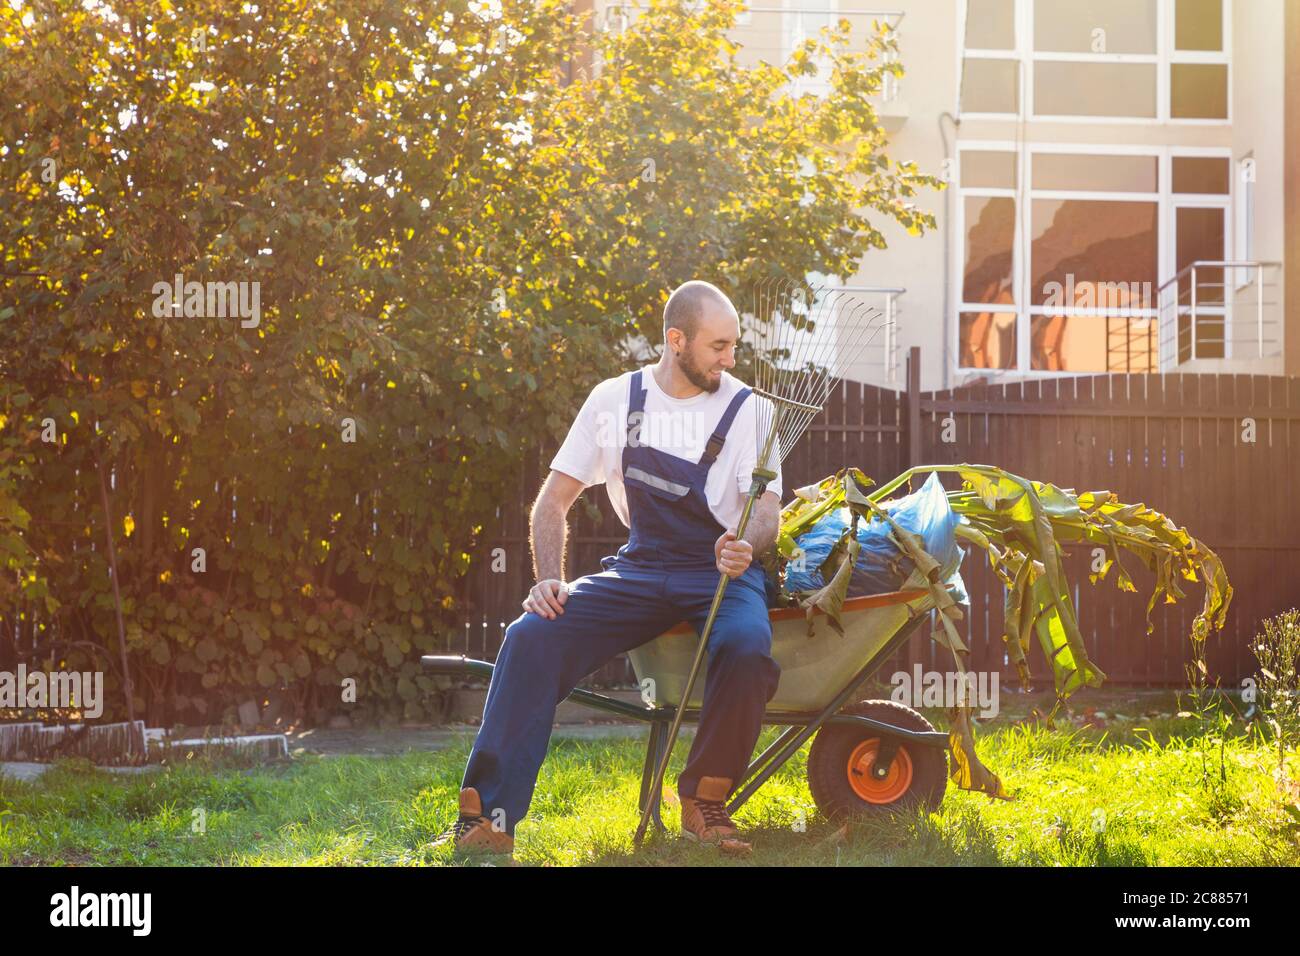 Der Gärtner sitzt auf dem Wagen mit Blättern. Die Sonne scheint hell. Lächeln und gute Laune. Gartenarbeit und Reinigung. Stockfoto